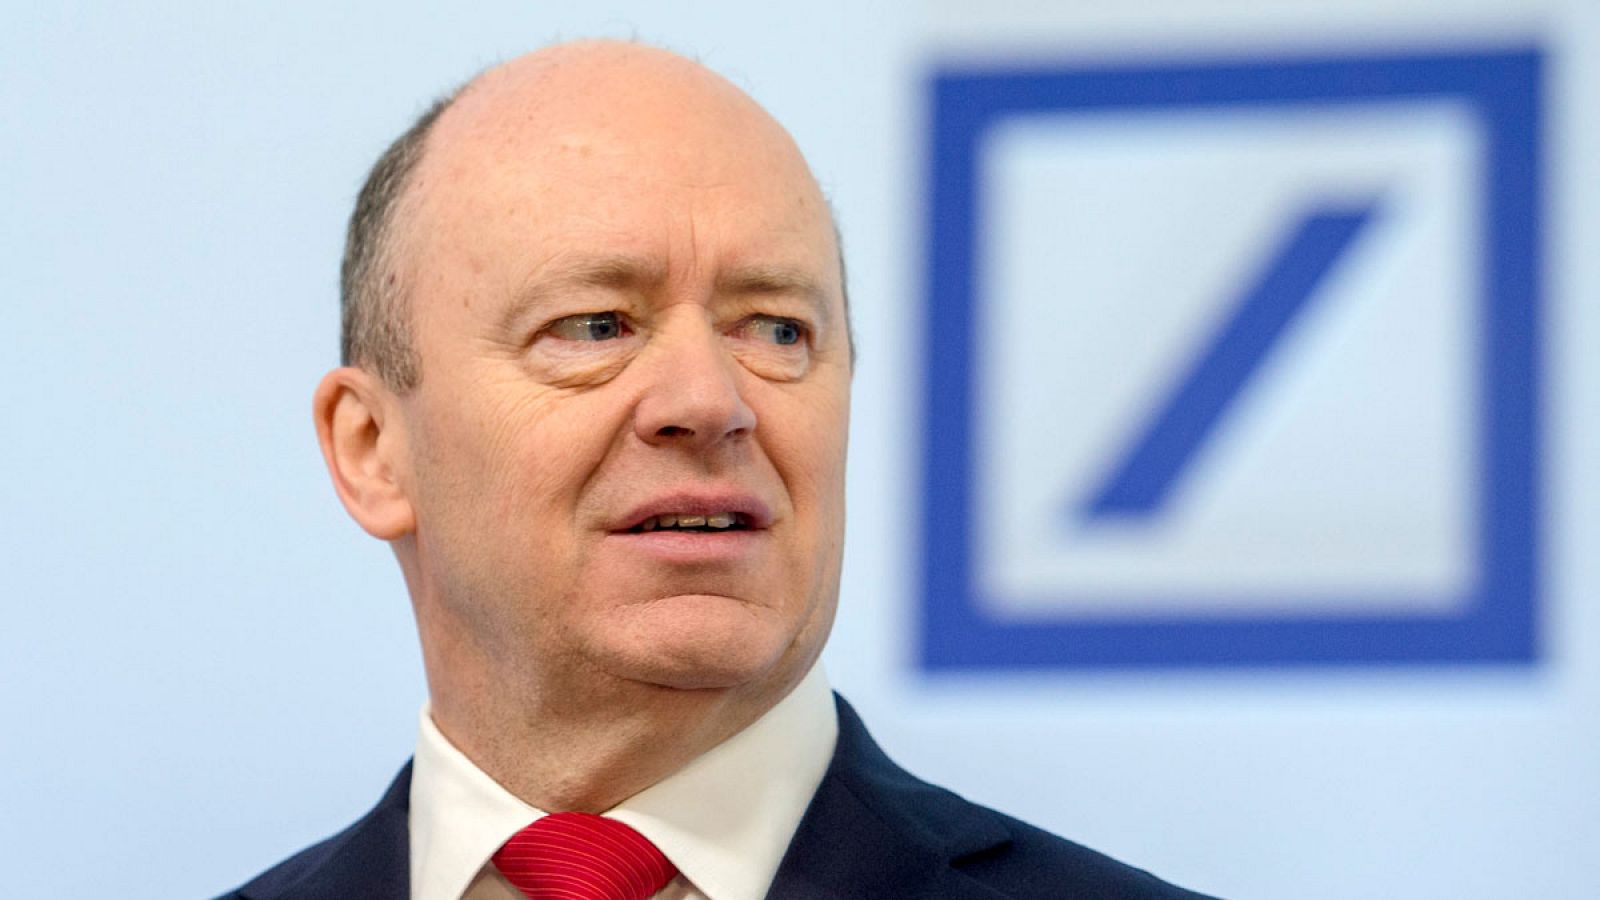 El presidente de la junta directiva de Deutsche Bank, John Cryan, presenta los resultados anuales de la entidad en Fráncfort (Alemania).